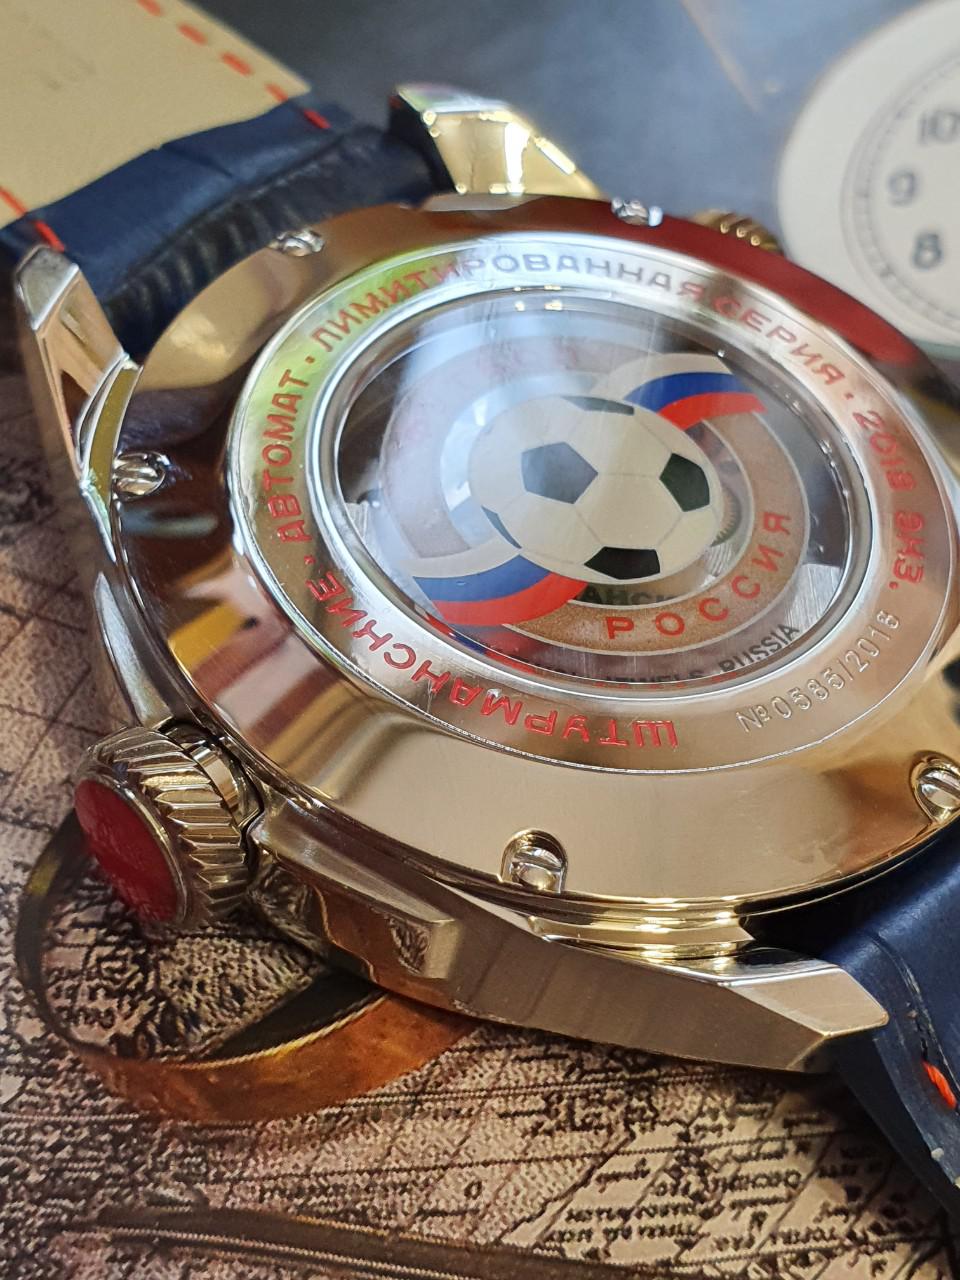 Đồng hồ Bóng đá World cup 2018 Sturmanskie phiên bản giới hạn 252112